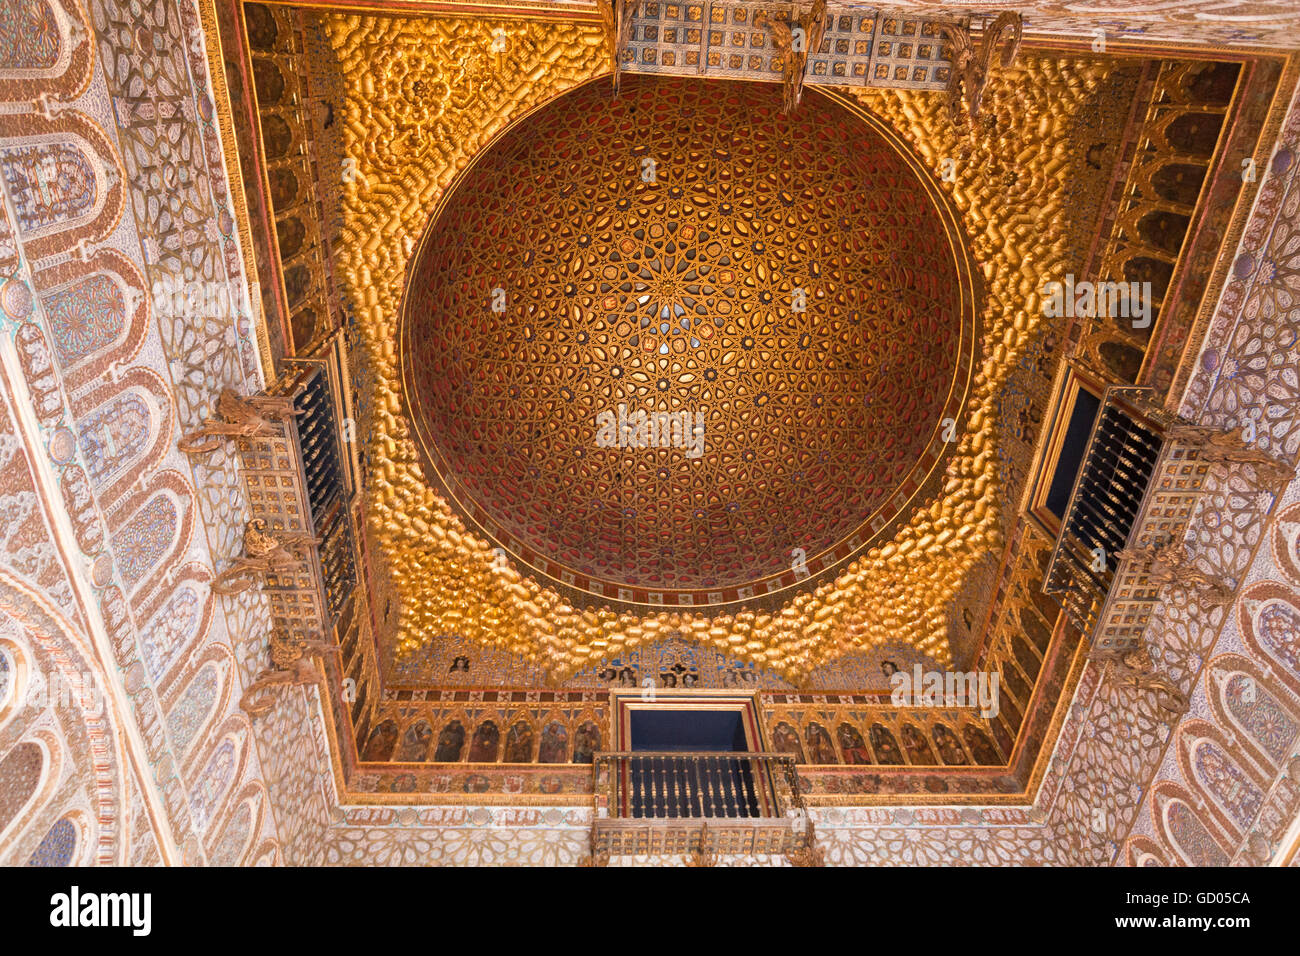 Die goldene Kuppel des Salon de Los Embajadores (Halle der Botschafter), Alcazar von Sevilla, Spanien Stockfoto